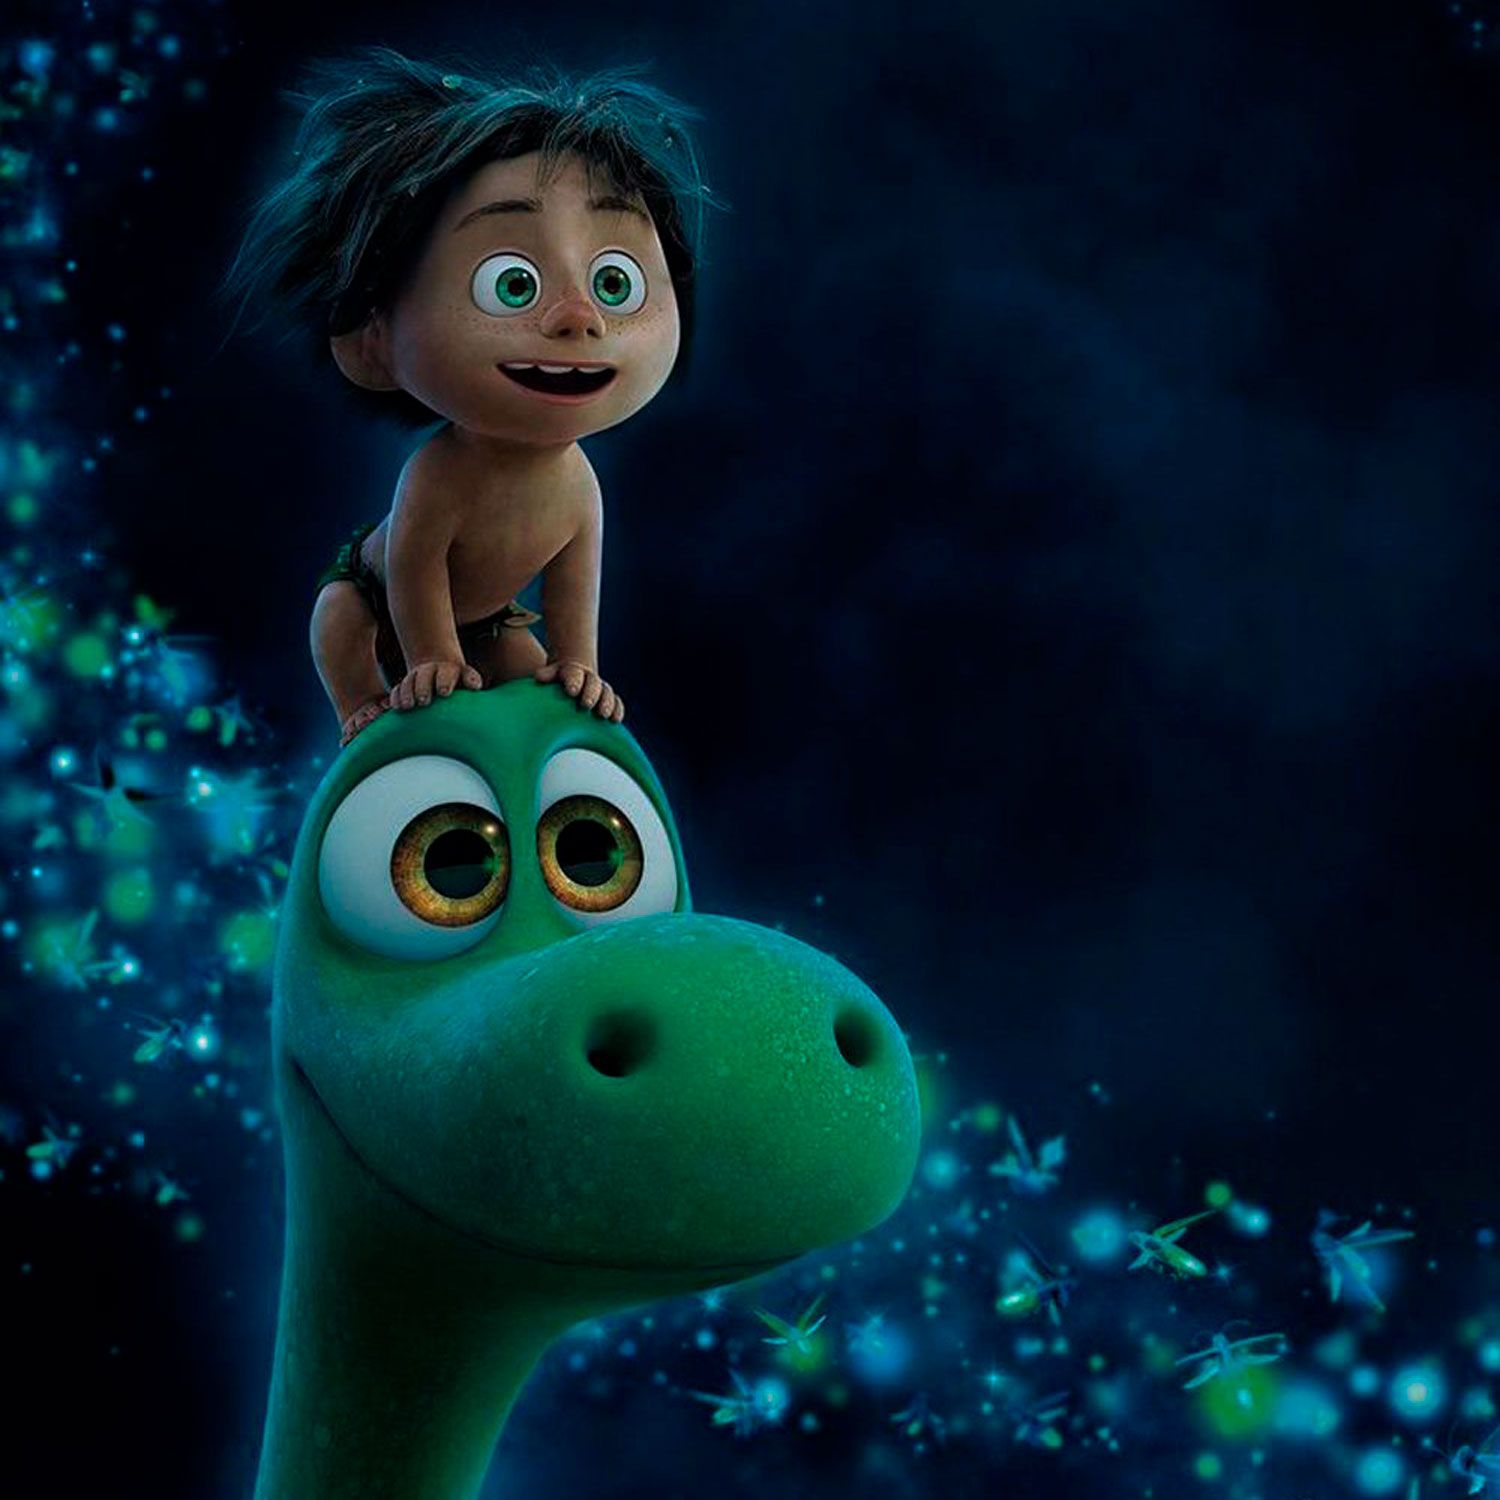 Студия Pixar анонсировала новый мультфильм Elemental